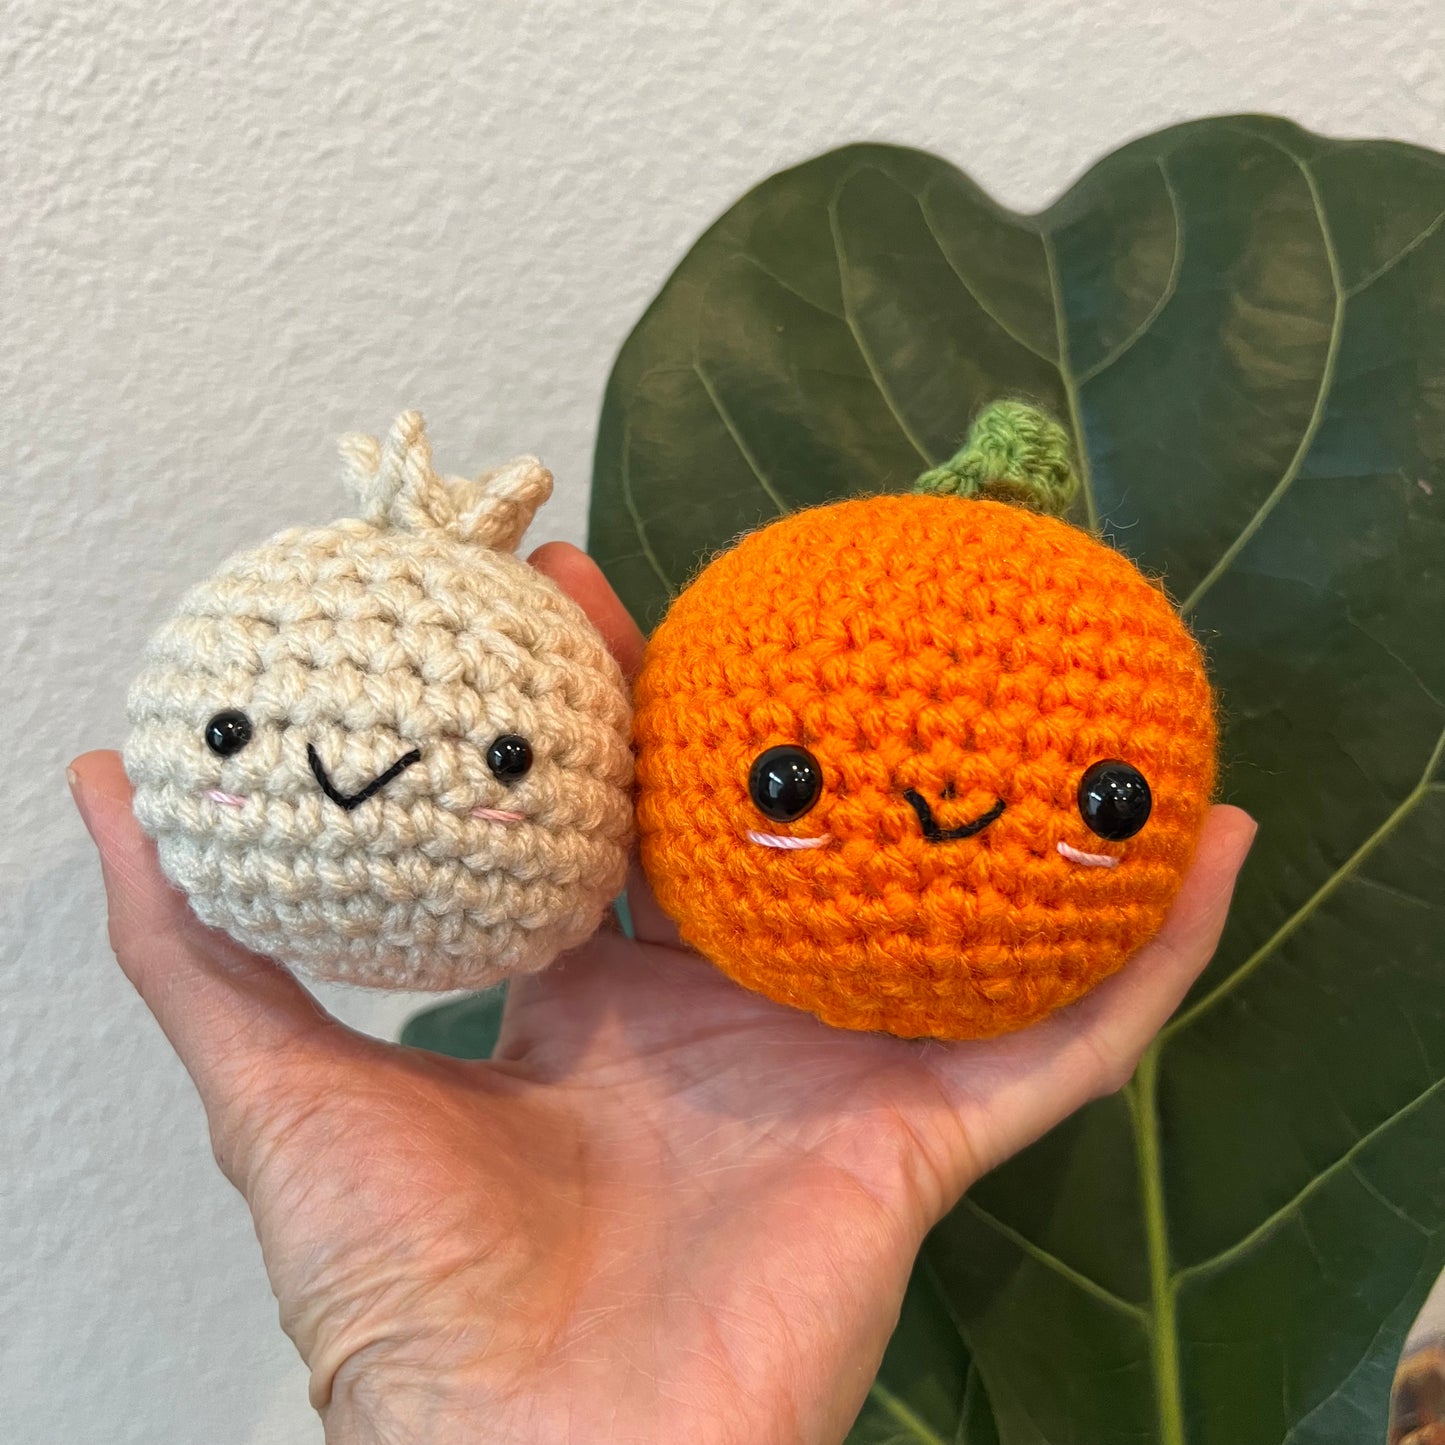 Crochet: Dumpling or Cutie Orange